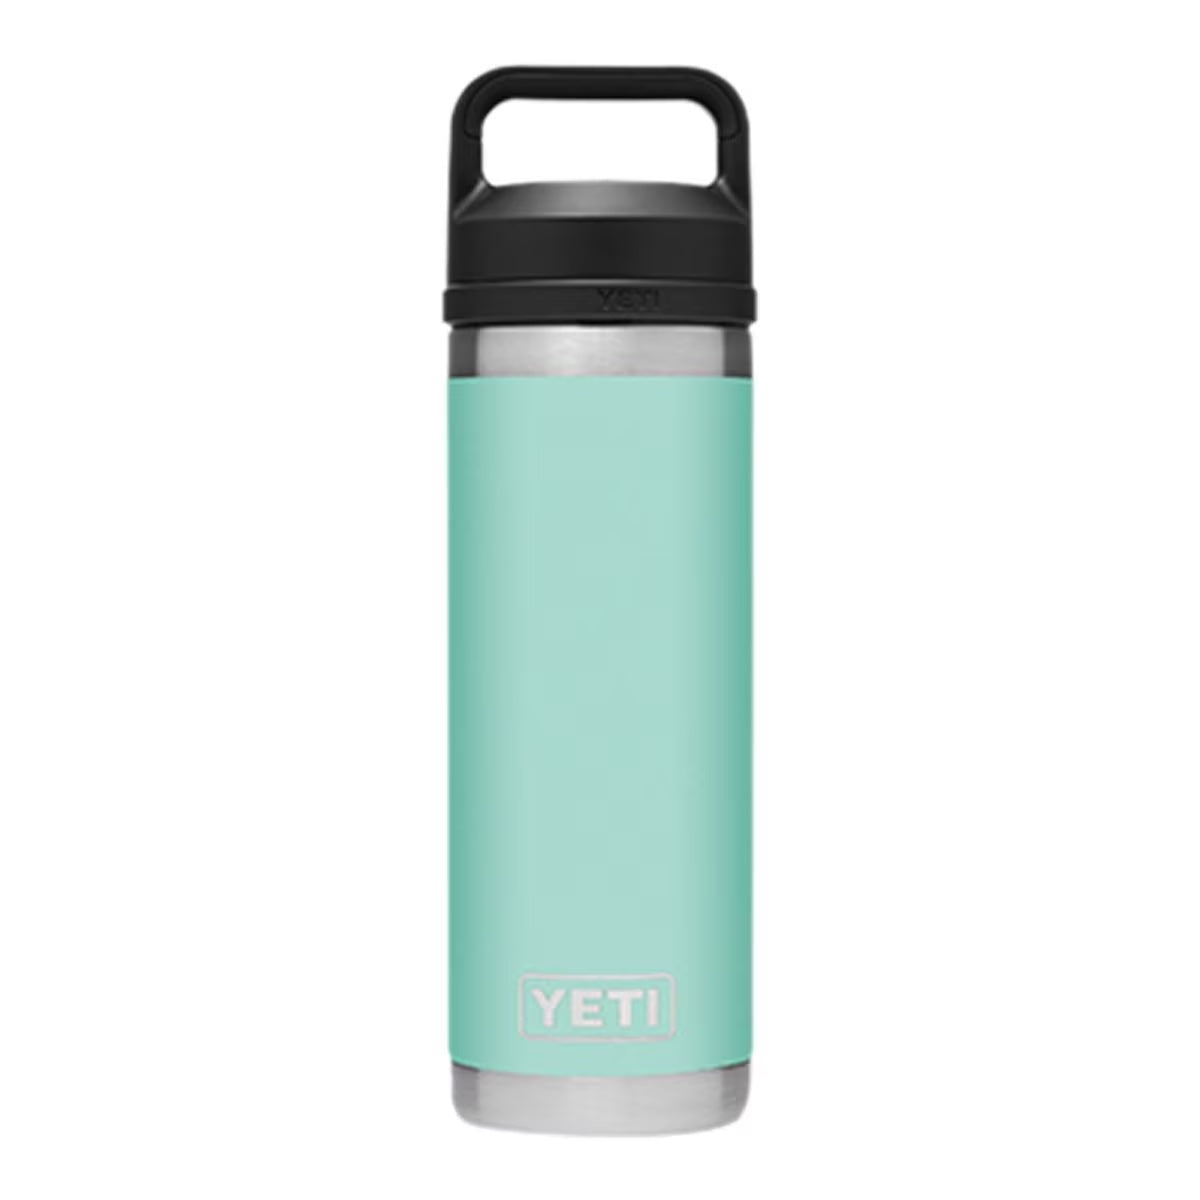 Personalized 18 oz Yeti Chug Water Bottle